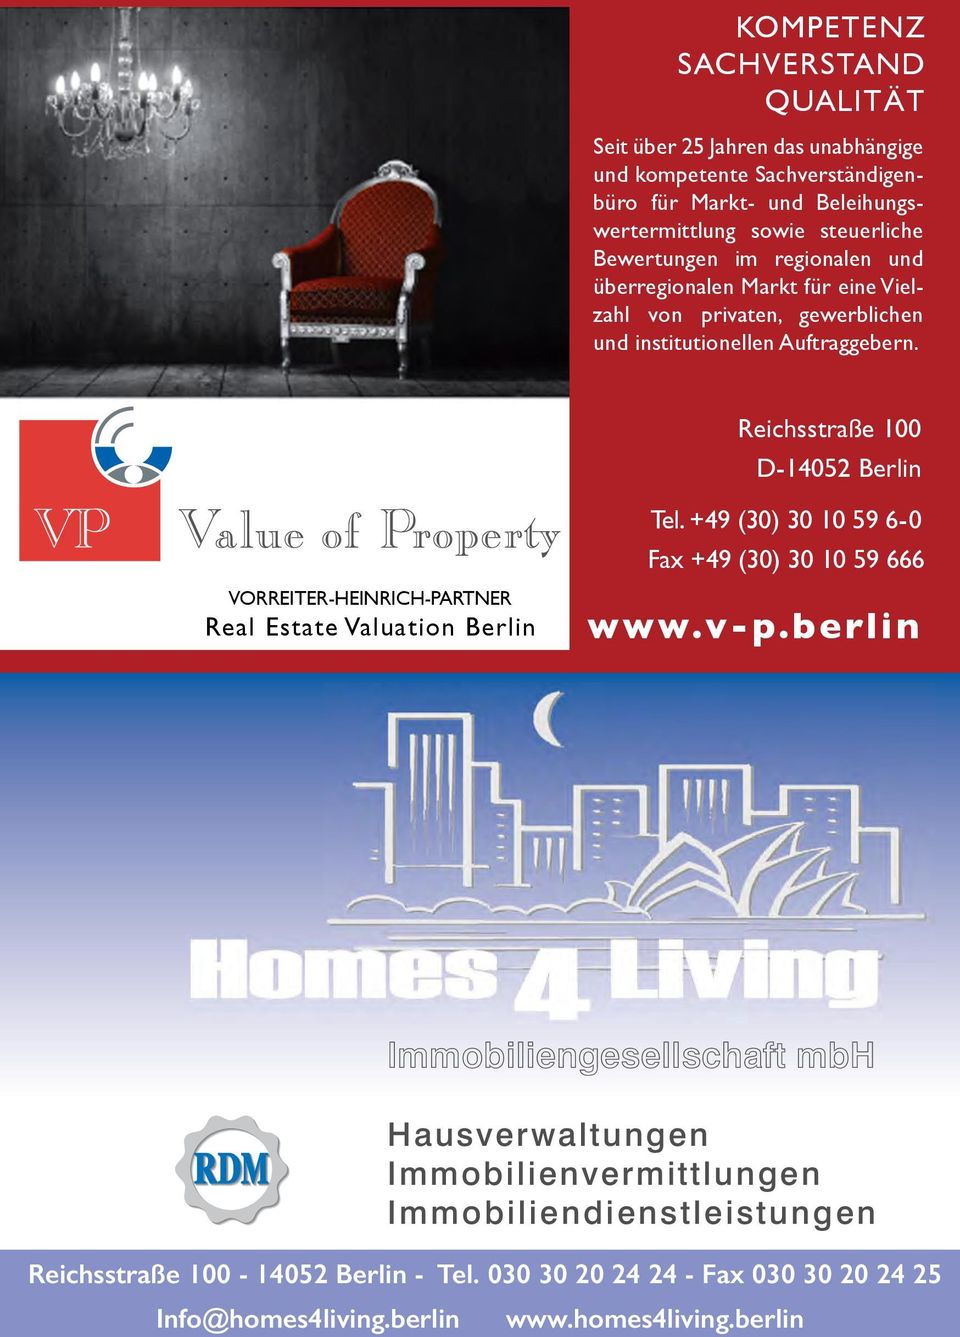 Reichsstraße 100 100 D-14052 Berlin VORREITER-HEINRICH-PARTNER Real Estate Valuation Berlin Tel. Tel. +49 +49 (30) (30) 30 30101059596-0 6-0 Fax Fax +49 +49 (30) (30) 30 3010105959666 666 www.v-p.